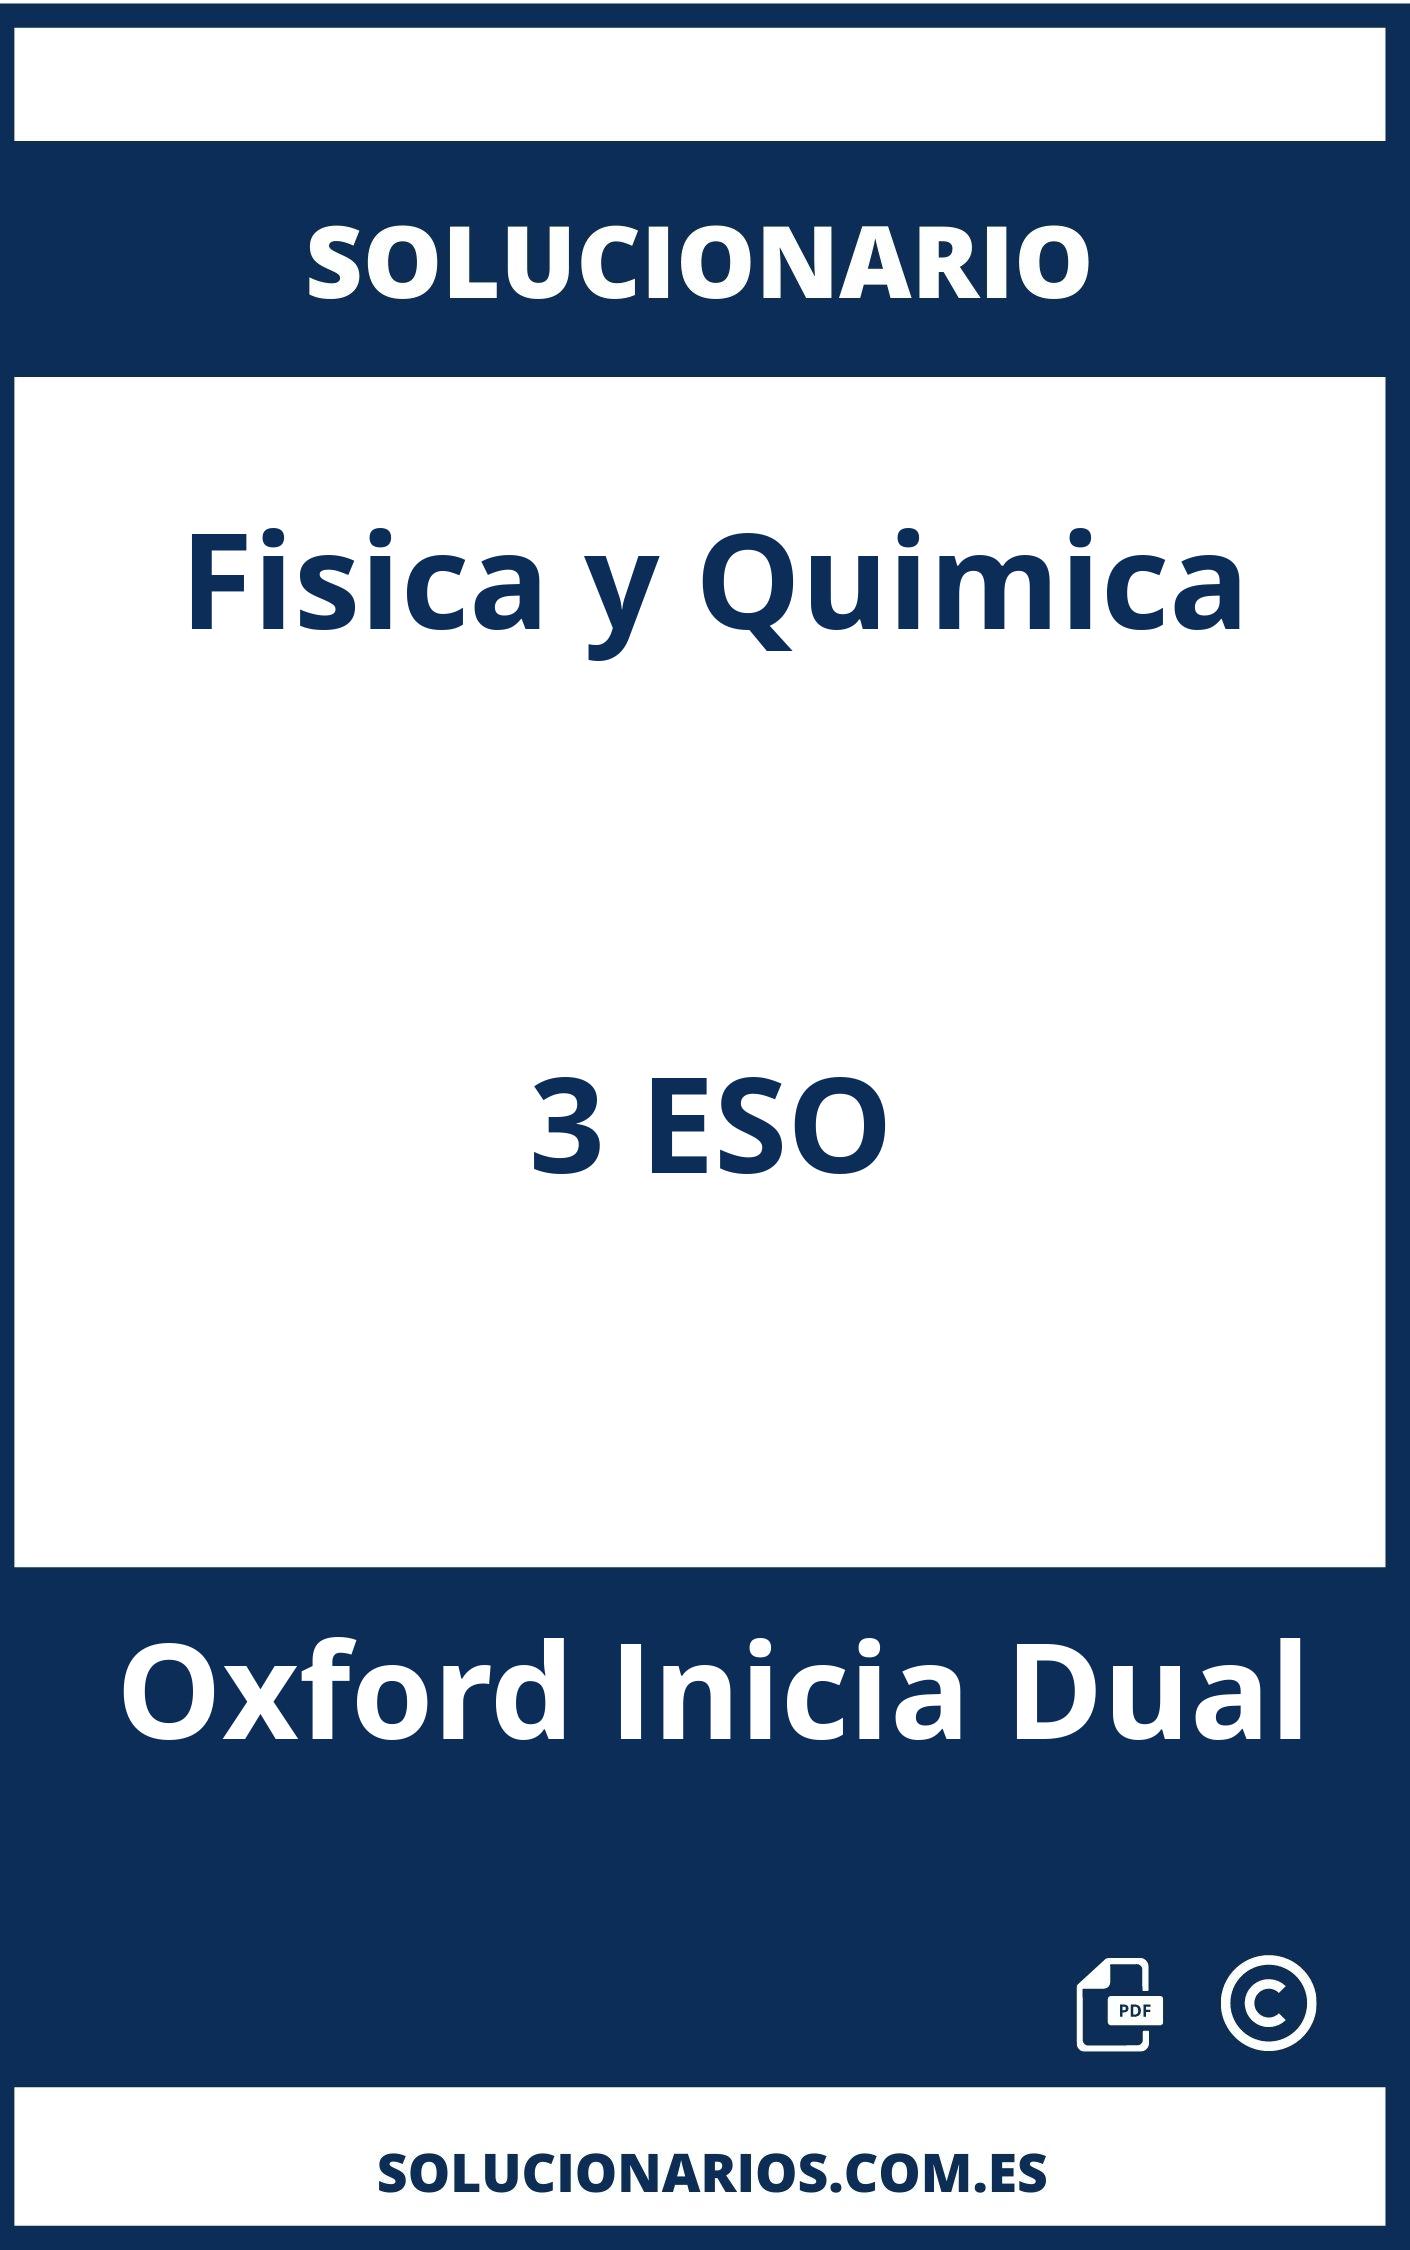 Solucionario Fisica y Quimica 3 ESO Oxford Inicia Dual